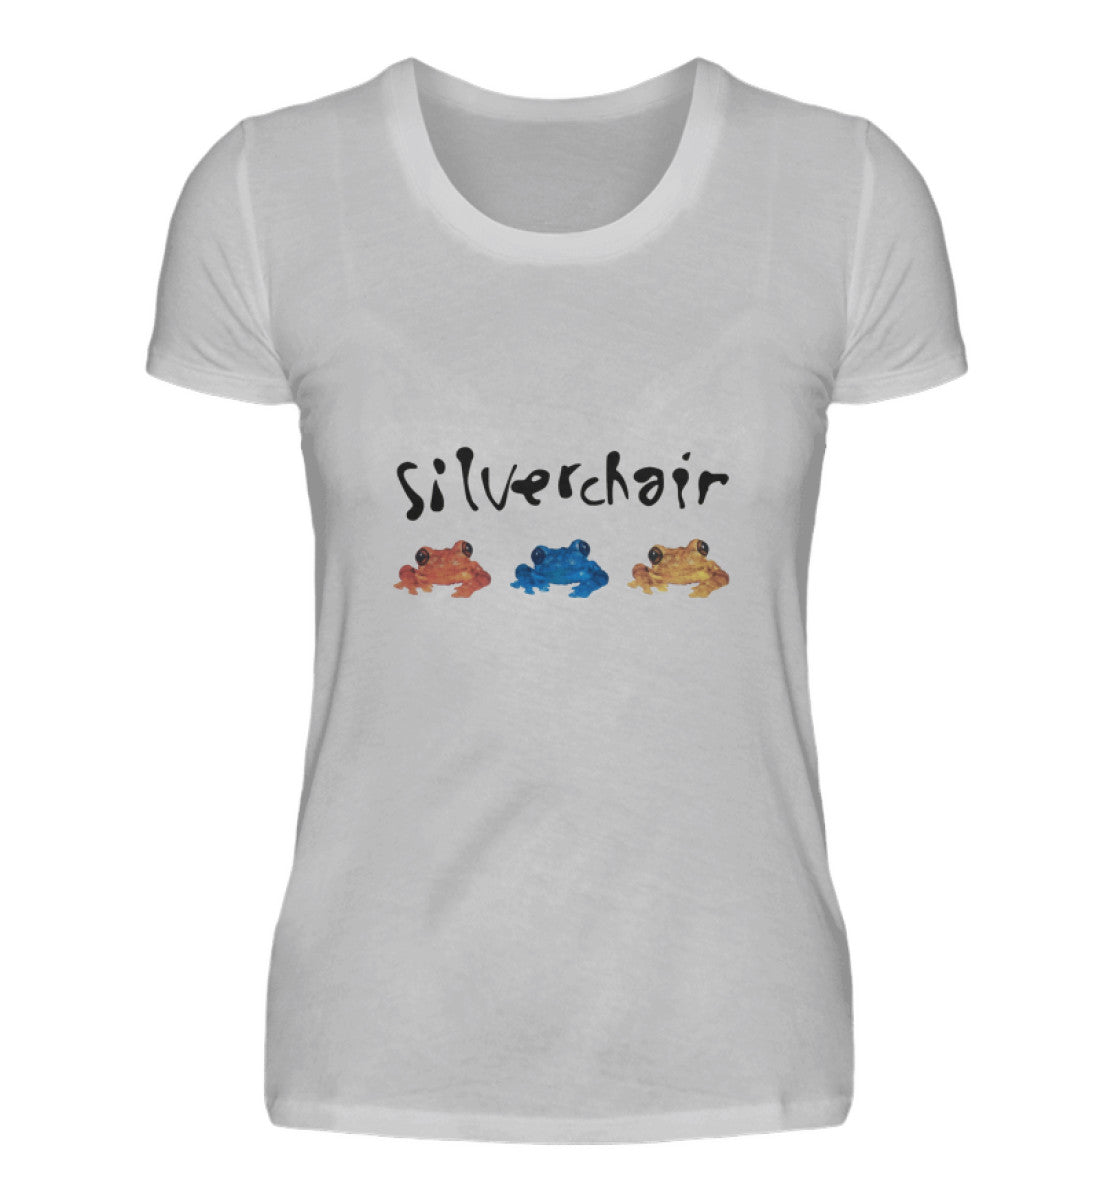 Silverchair T-Shirt Women